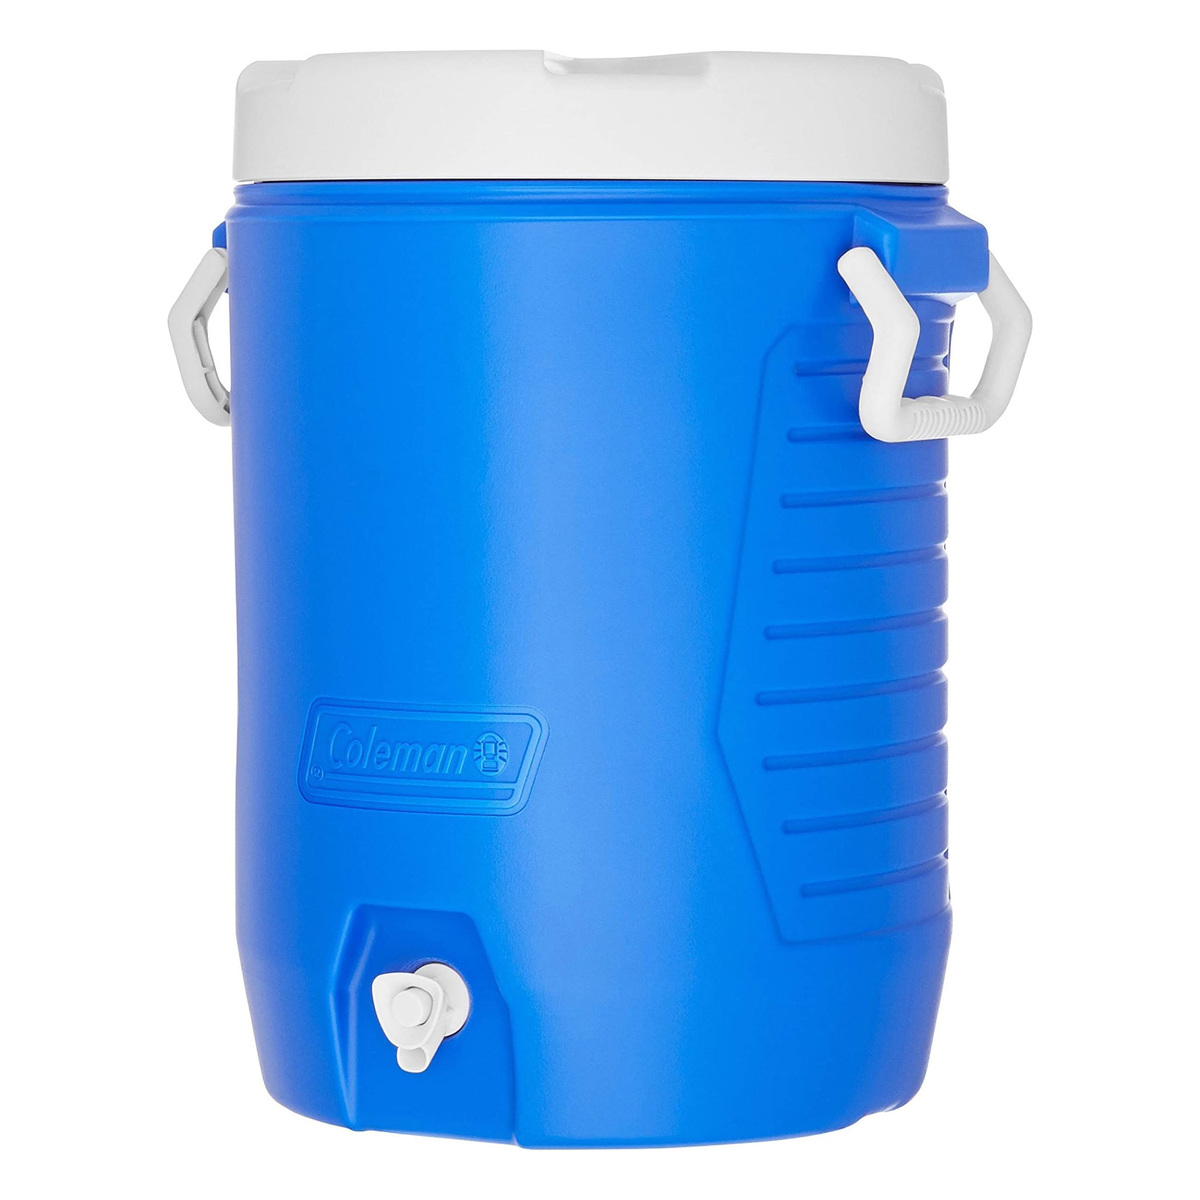 Coleman Beverage Cooler Jug, 5 Gal, Blue, 300000735